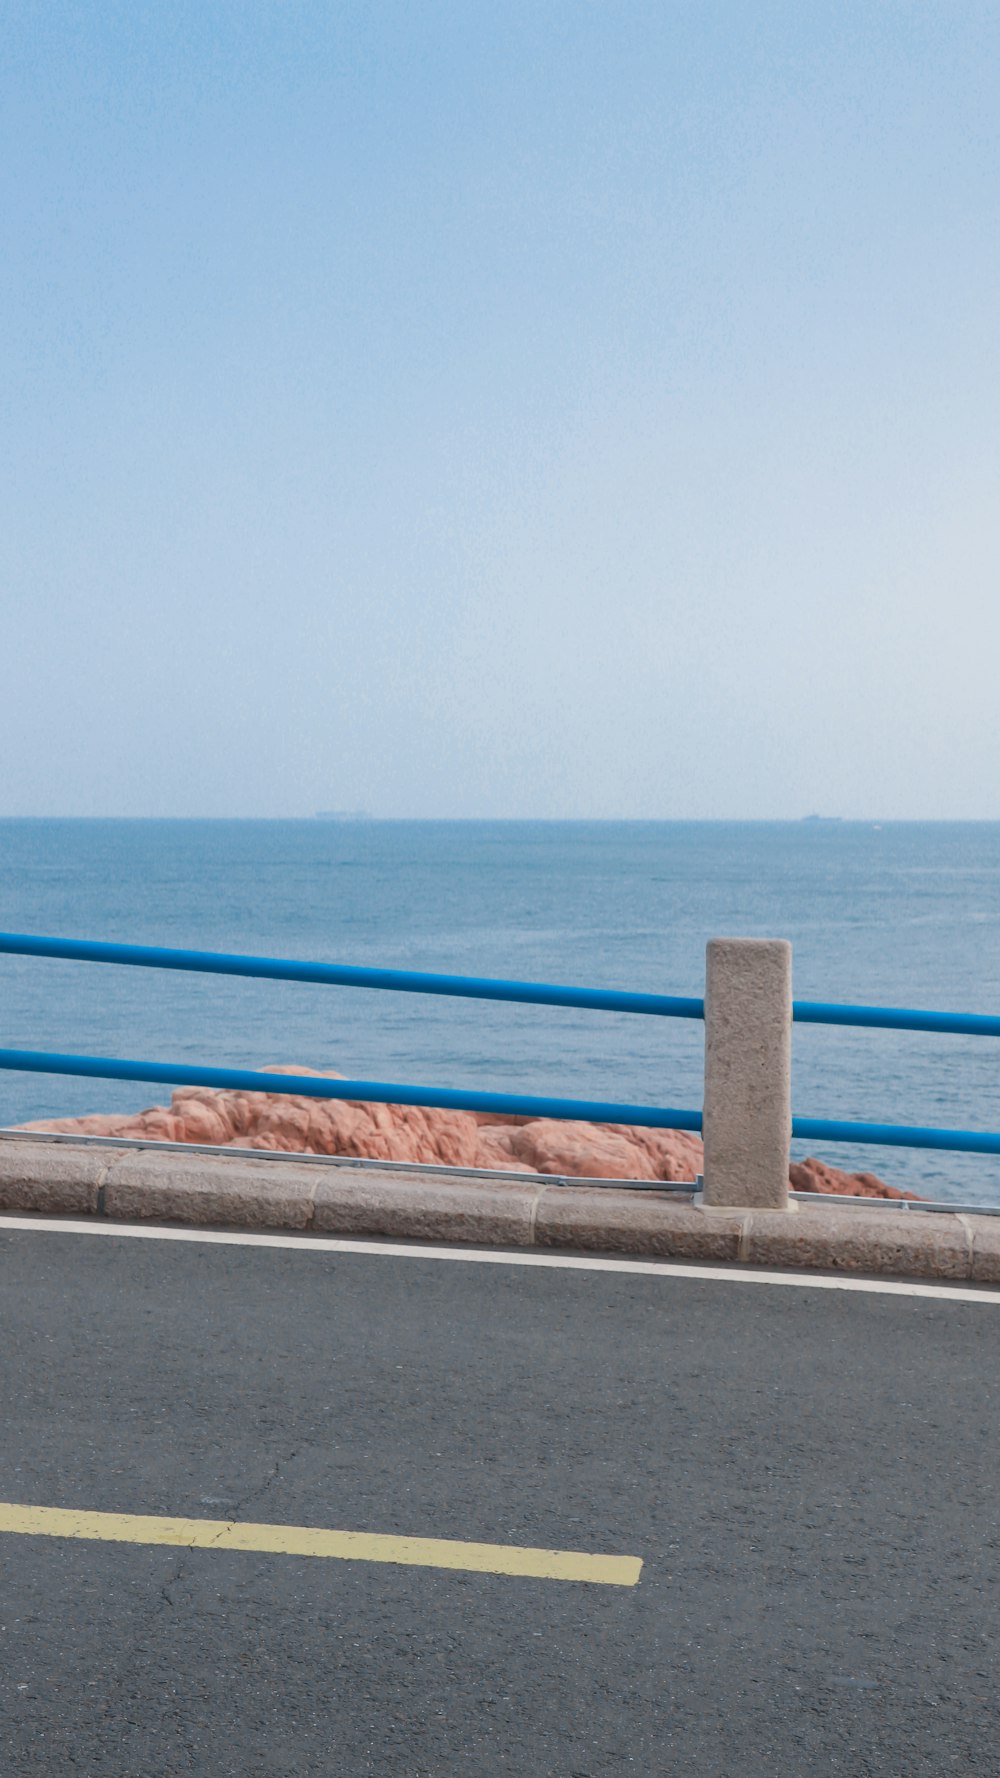 Muro de hormigón marrón cerca del mar azul durante el día